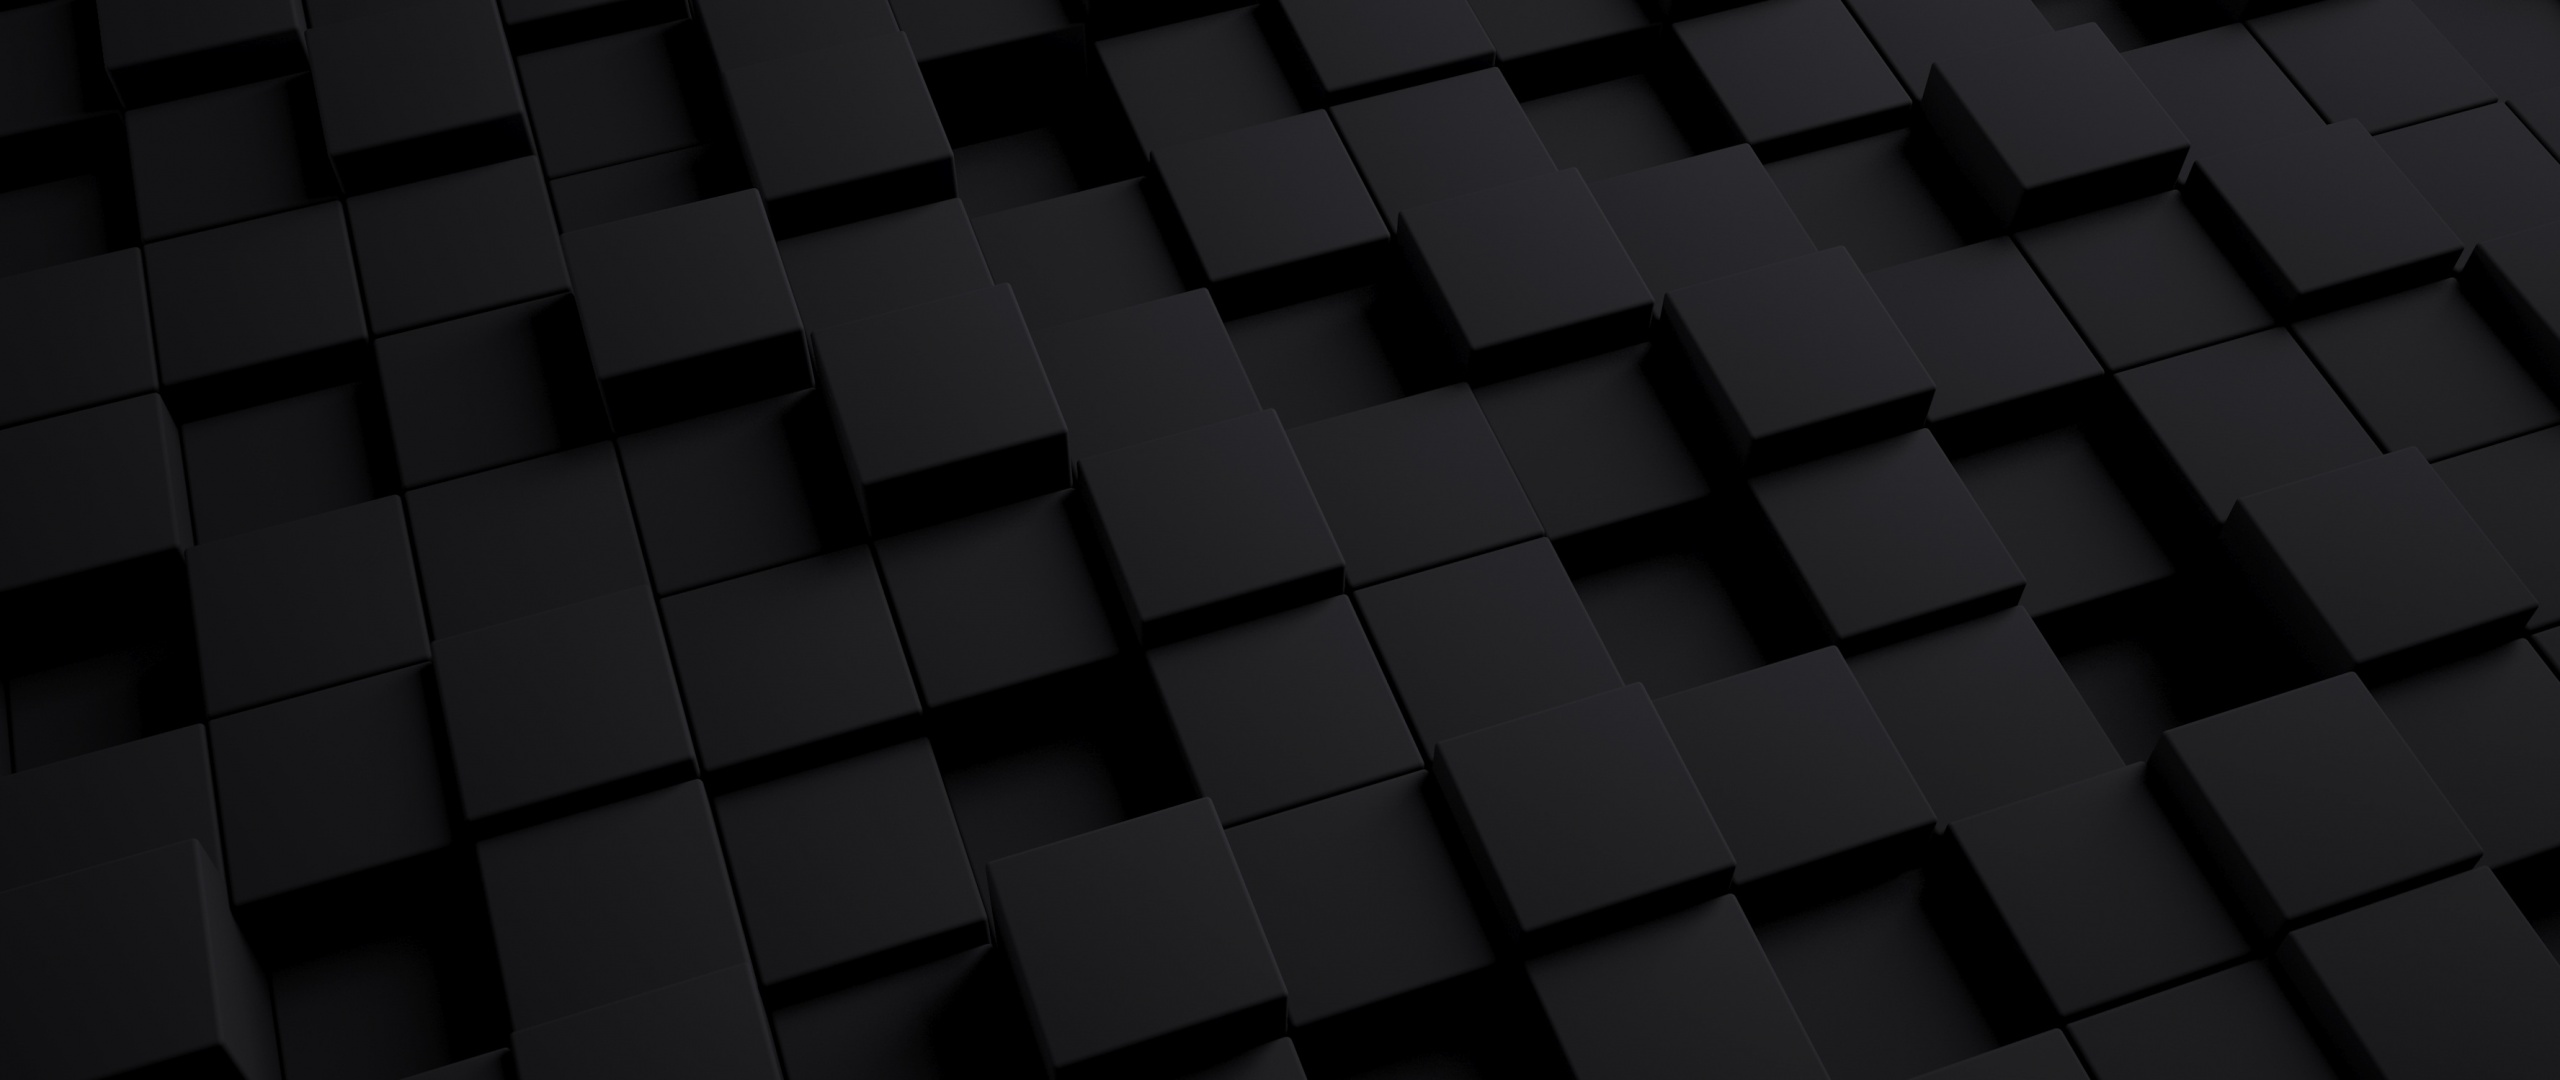 3d Black Cube Wallpaper Image Num 68